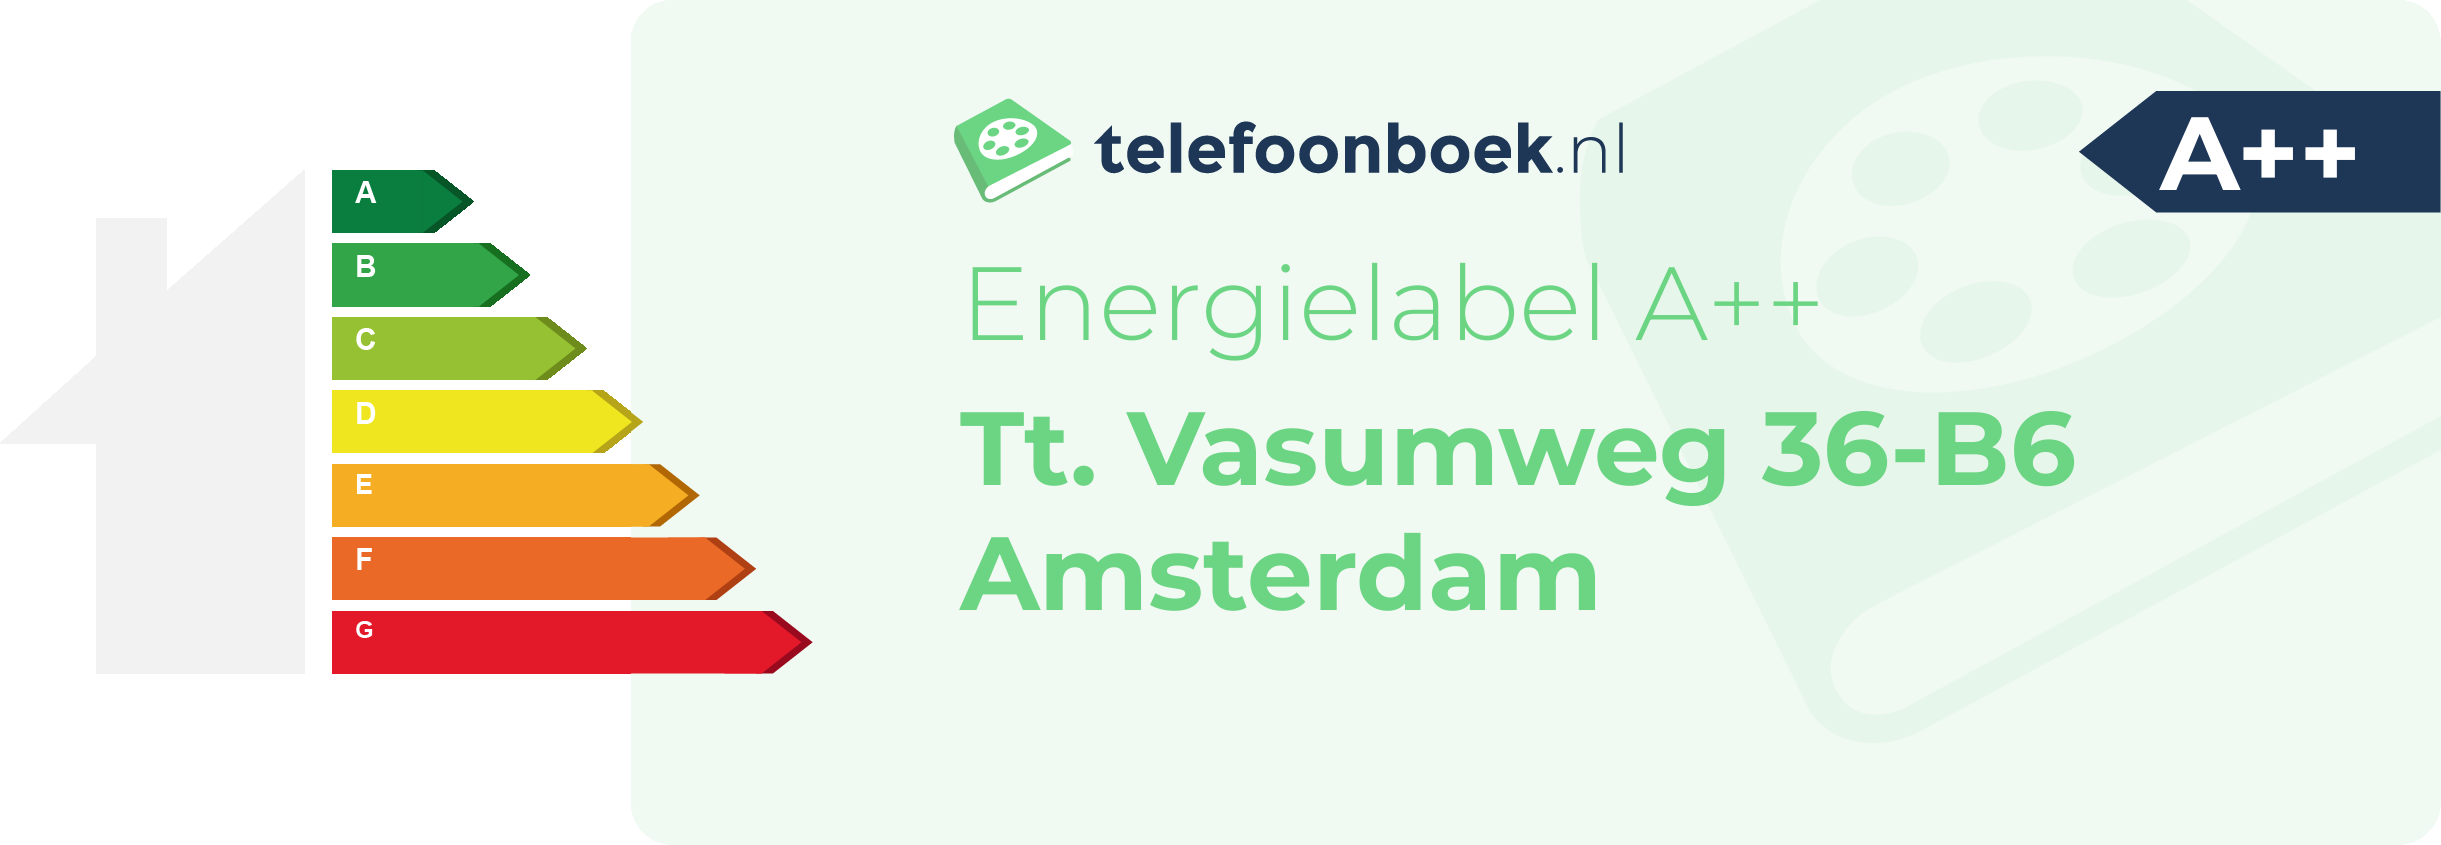 Energielabel Tt. Vasumweg 36-B6 Amsterdam